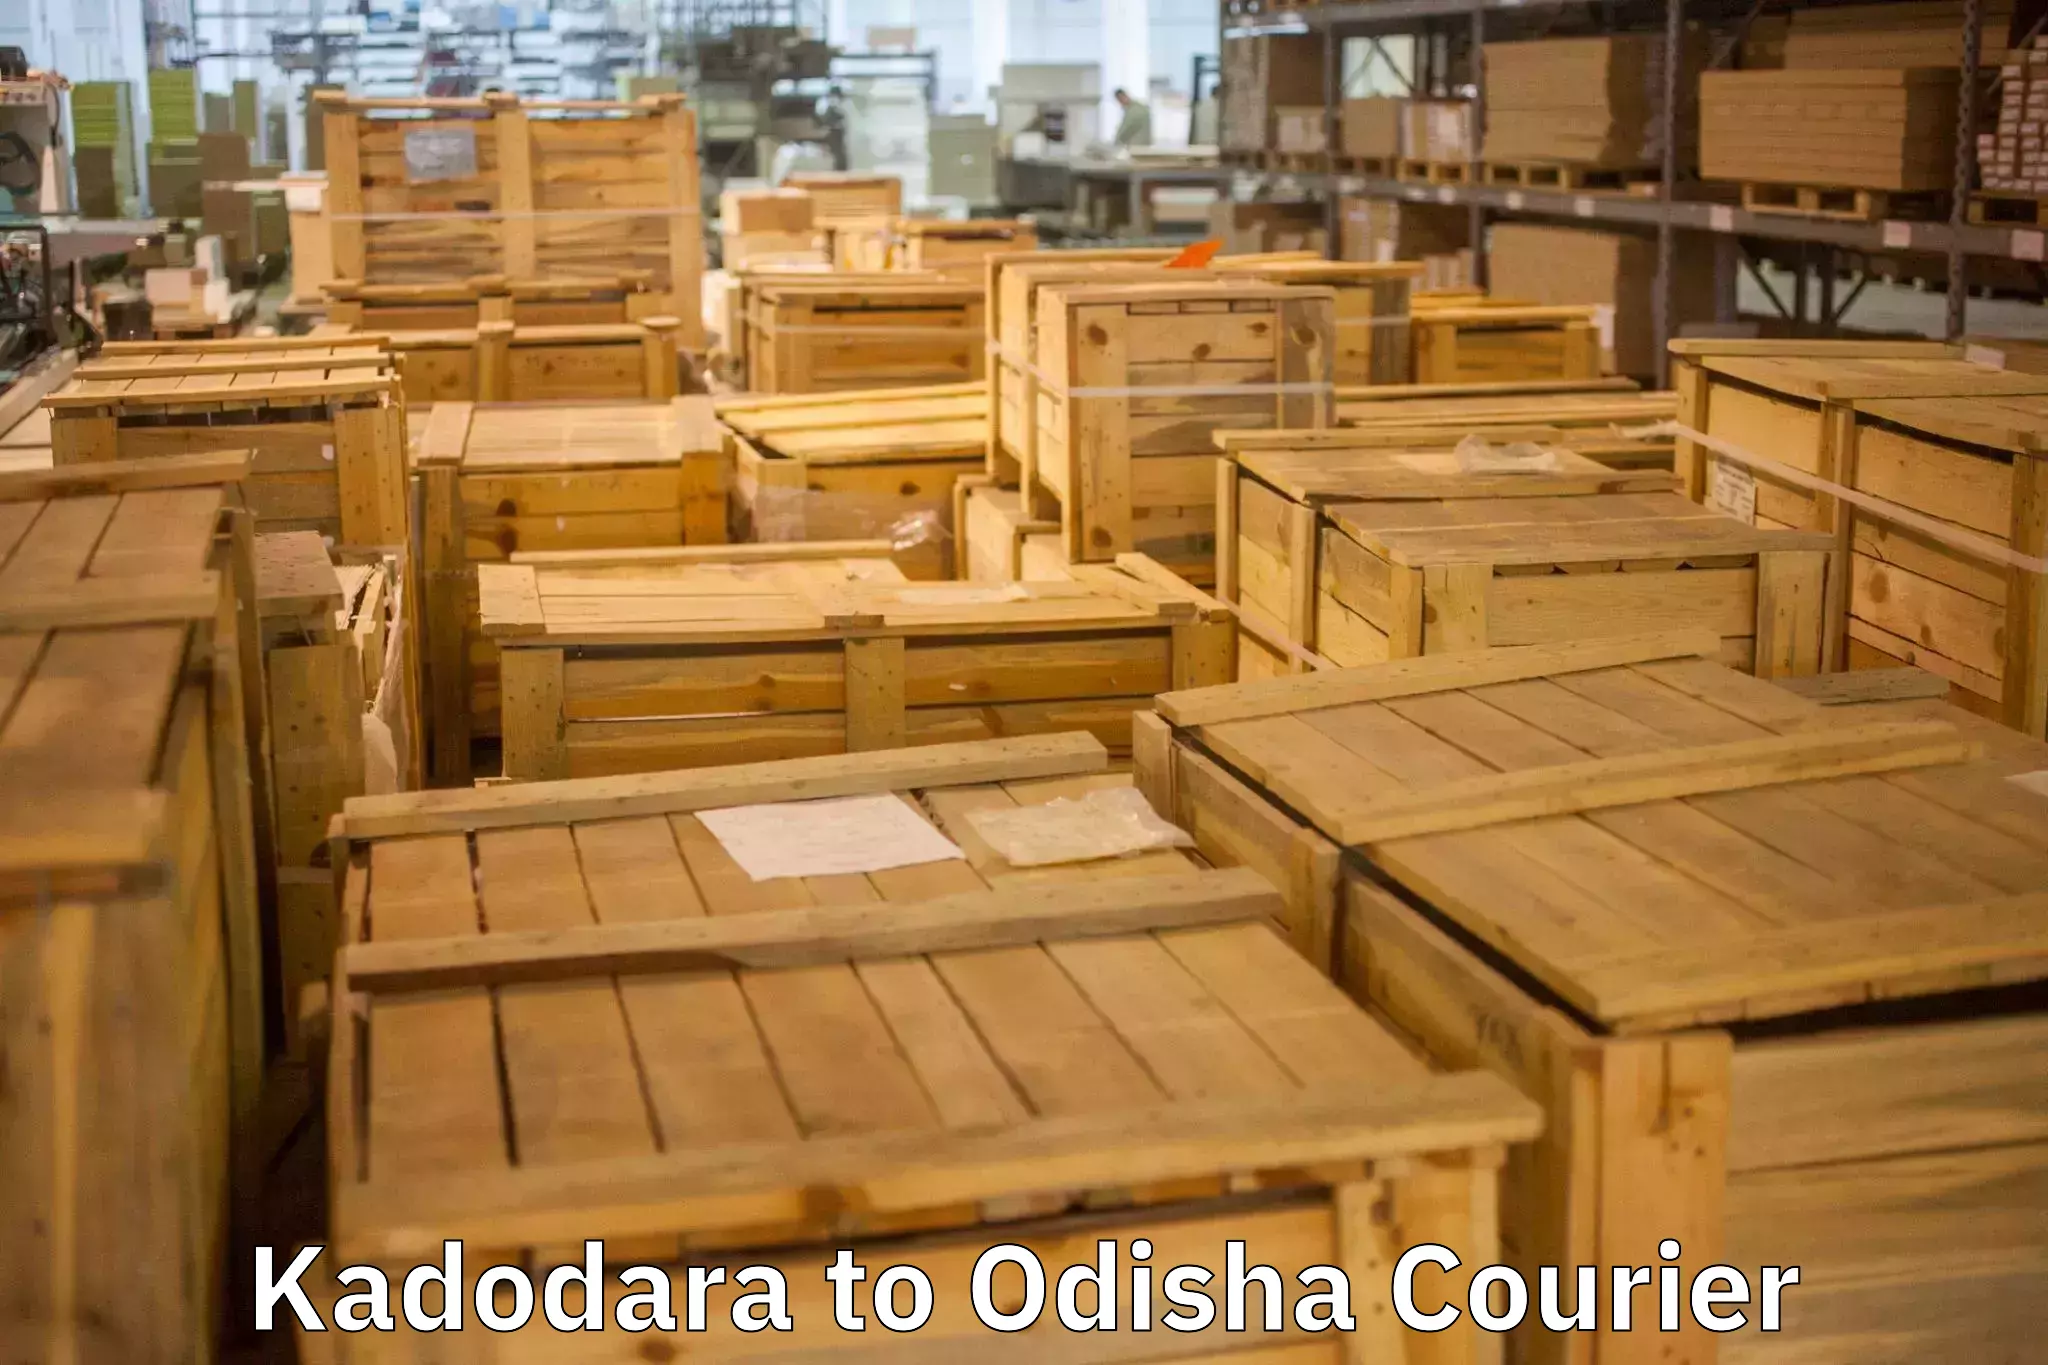 Reliable moving assistance Kadodara to Raighar